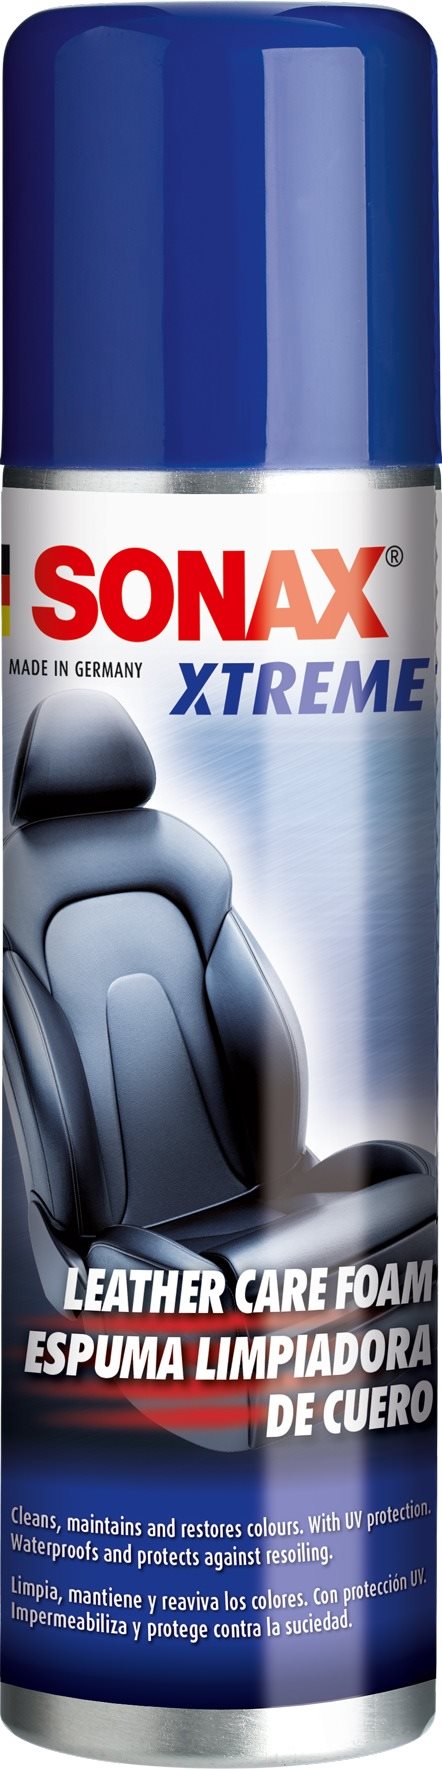 SONAX Xtreme kárpittisztító, 250 ml-es